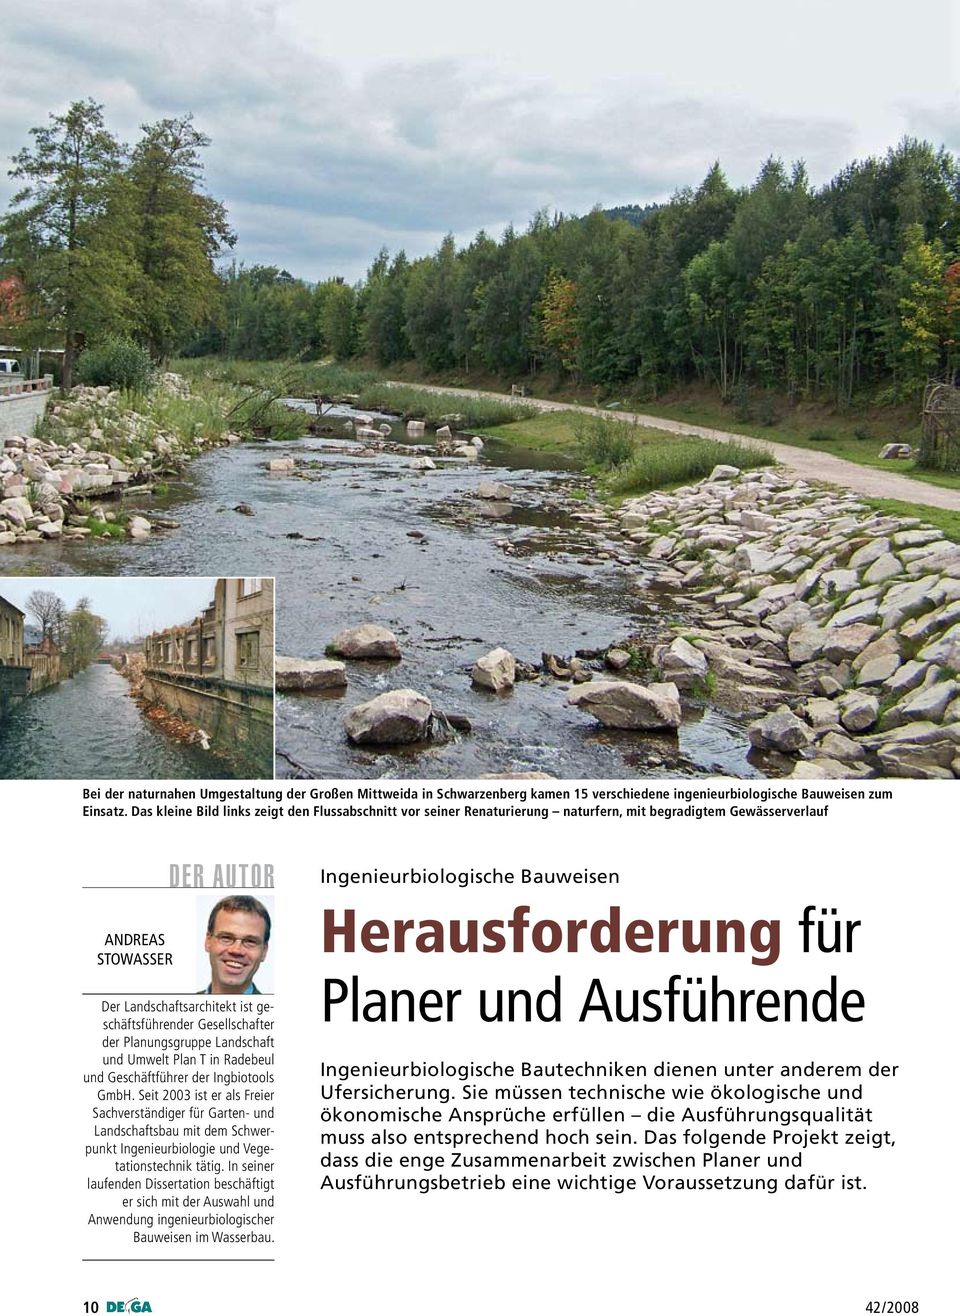 Gesellschafter der Planungsgruppe Landschaft und Umwelt Plan T in Radebeul und Geschäftführer der Ingbiotools GmbH.